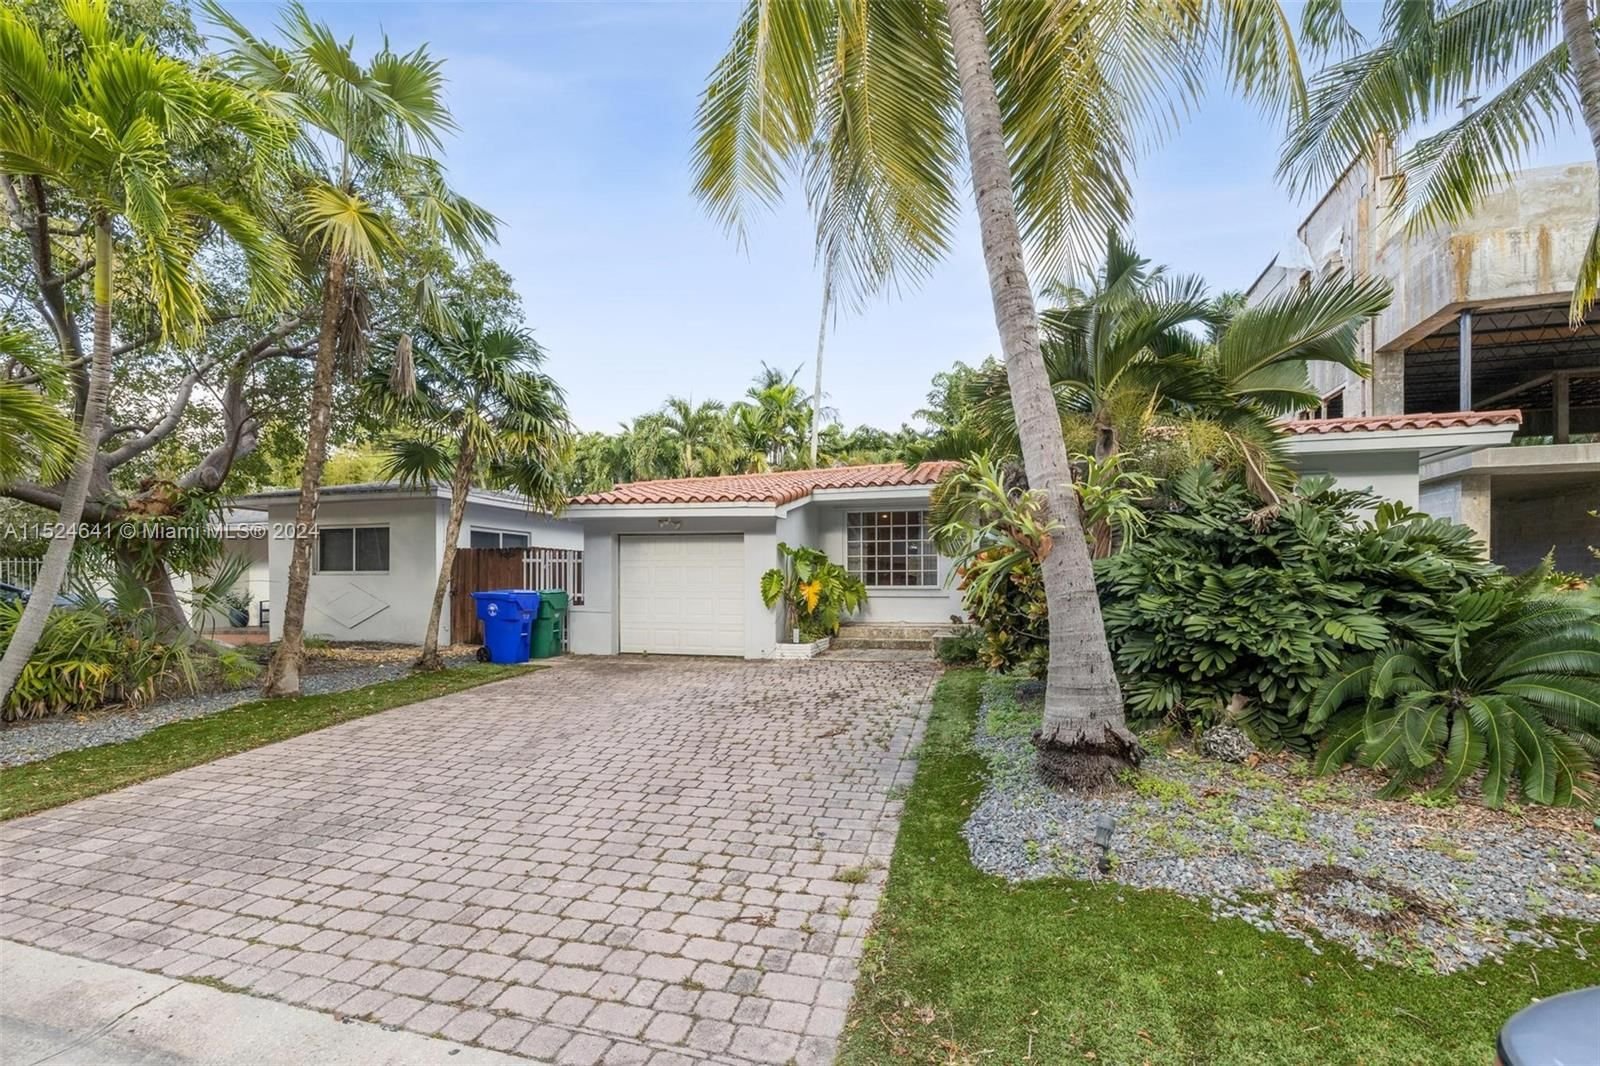 Real estate property located at 3565 Glencoe St, Miami-Dade County, GLENCOE A SUB, Miami, FL